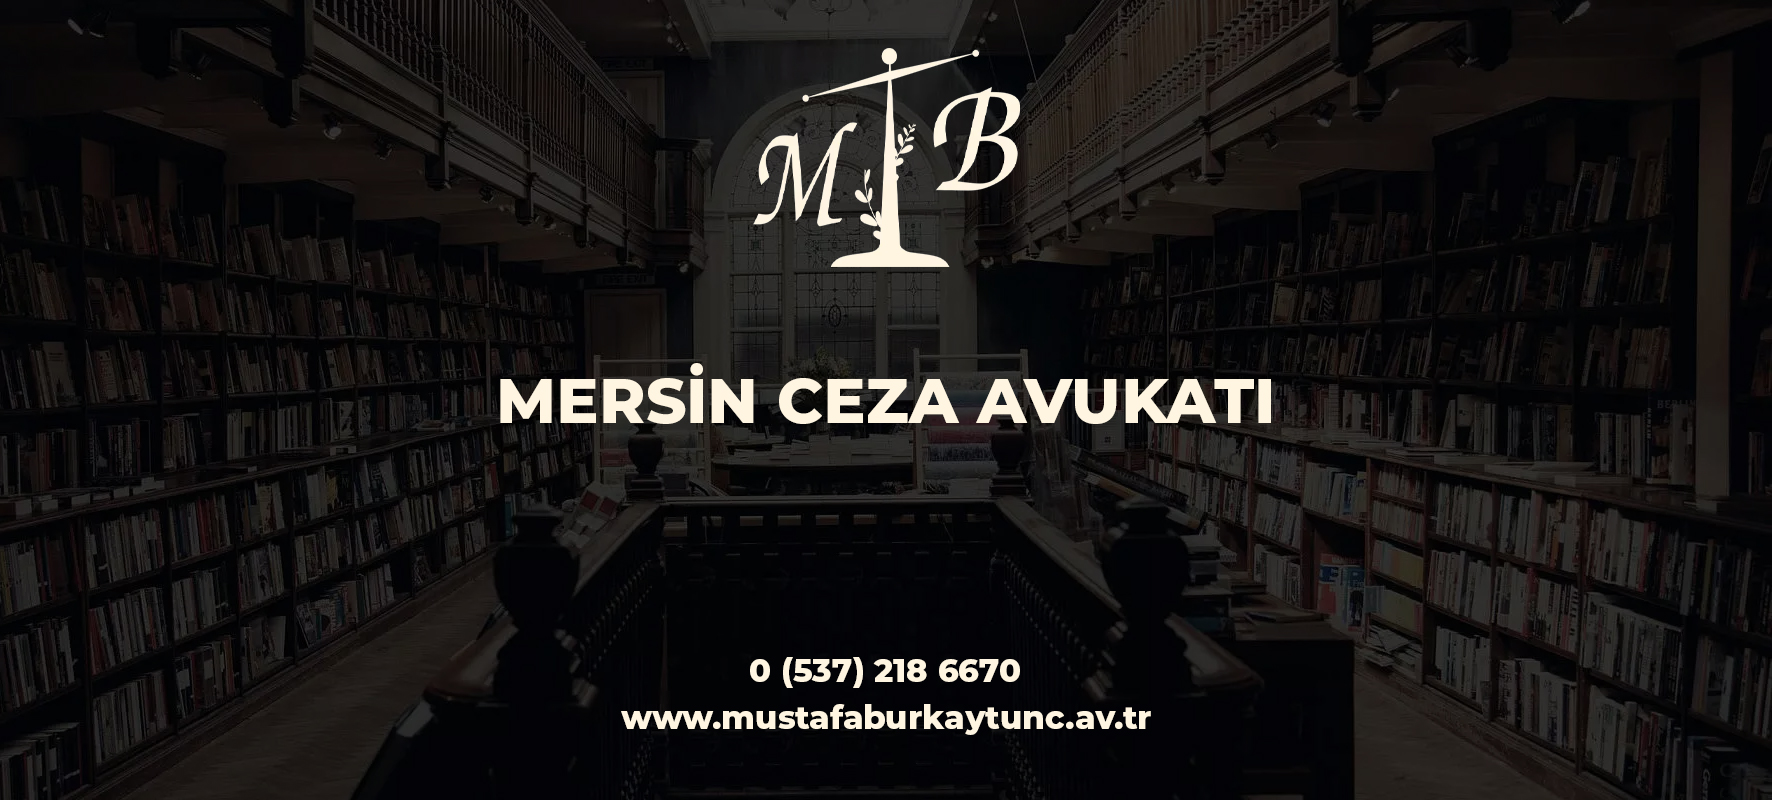 Mersin Ceza Hukuku Avukatı